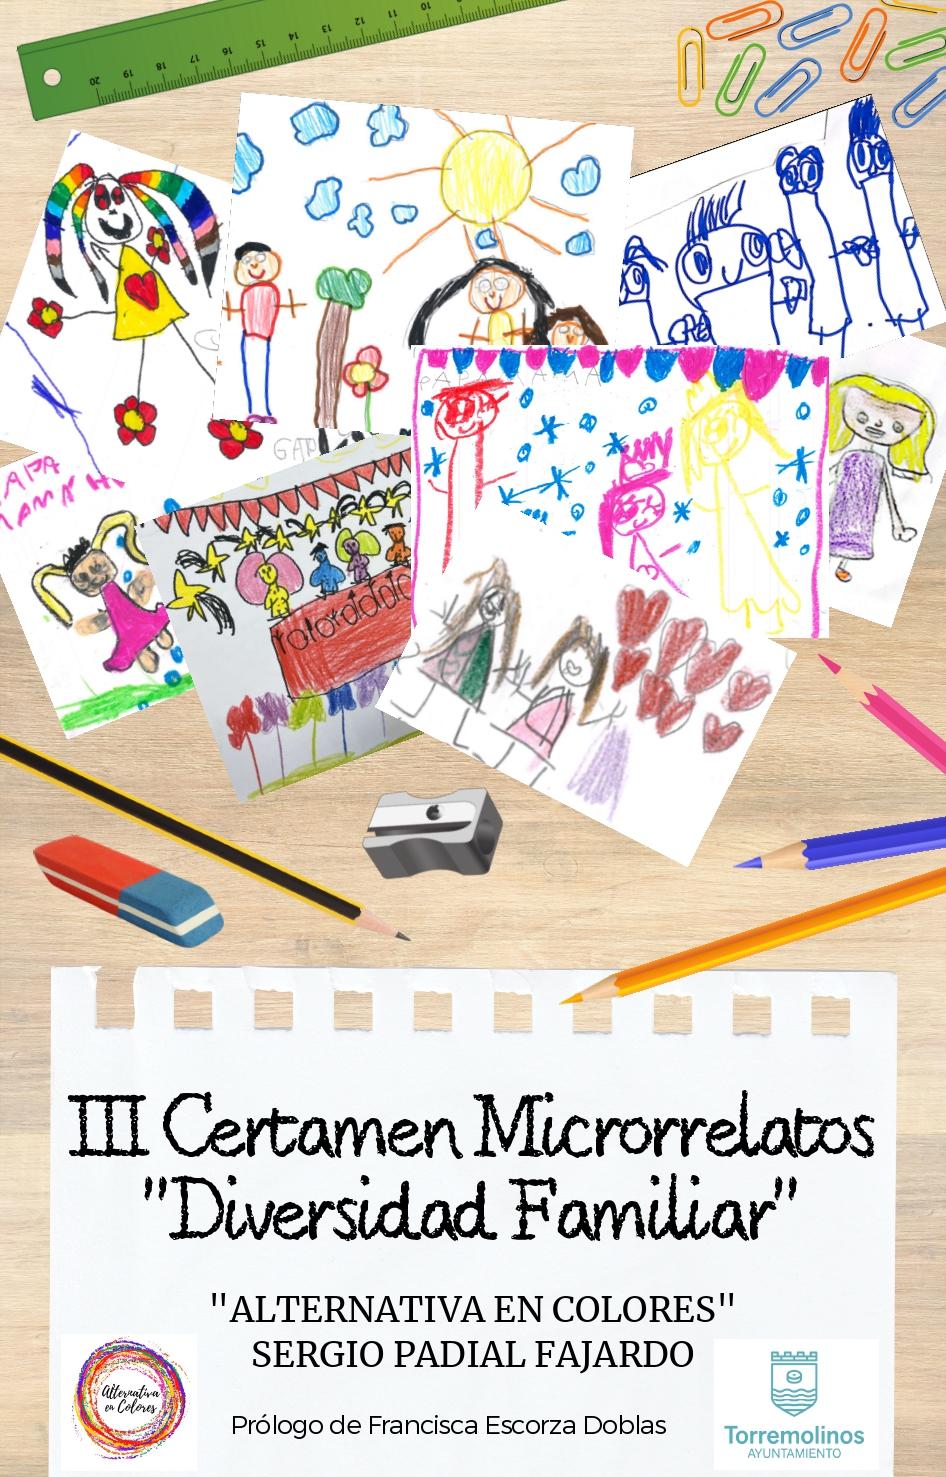 Convocado el III Certamen de Microrrelatos ‘Diversidad Familiar’  cuyas obras ganadoras se publicarán en un libro 